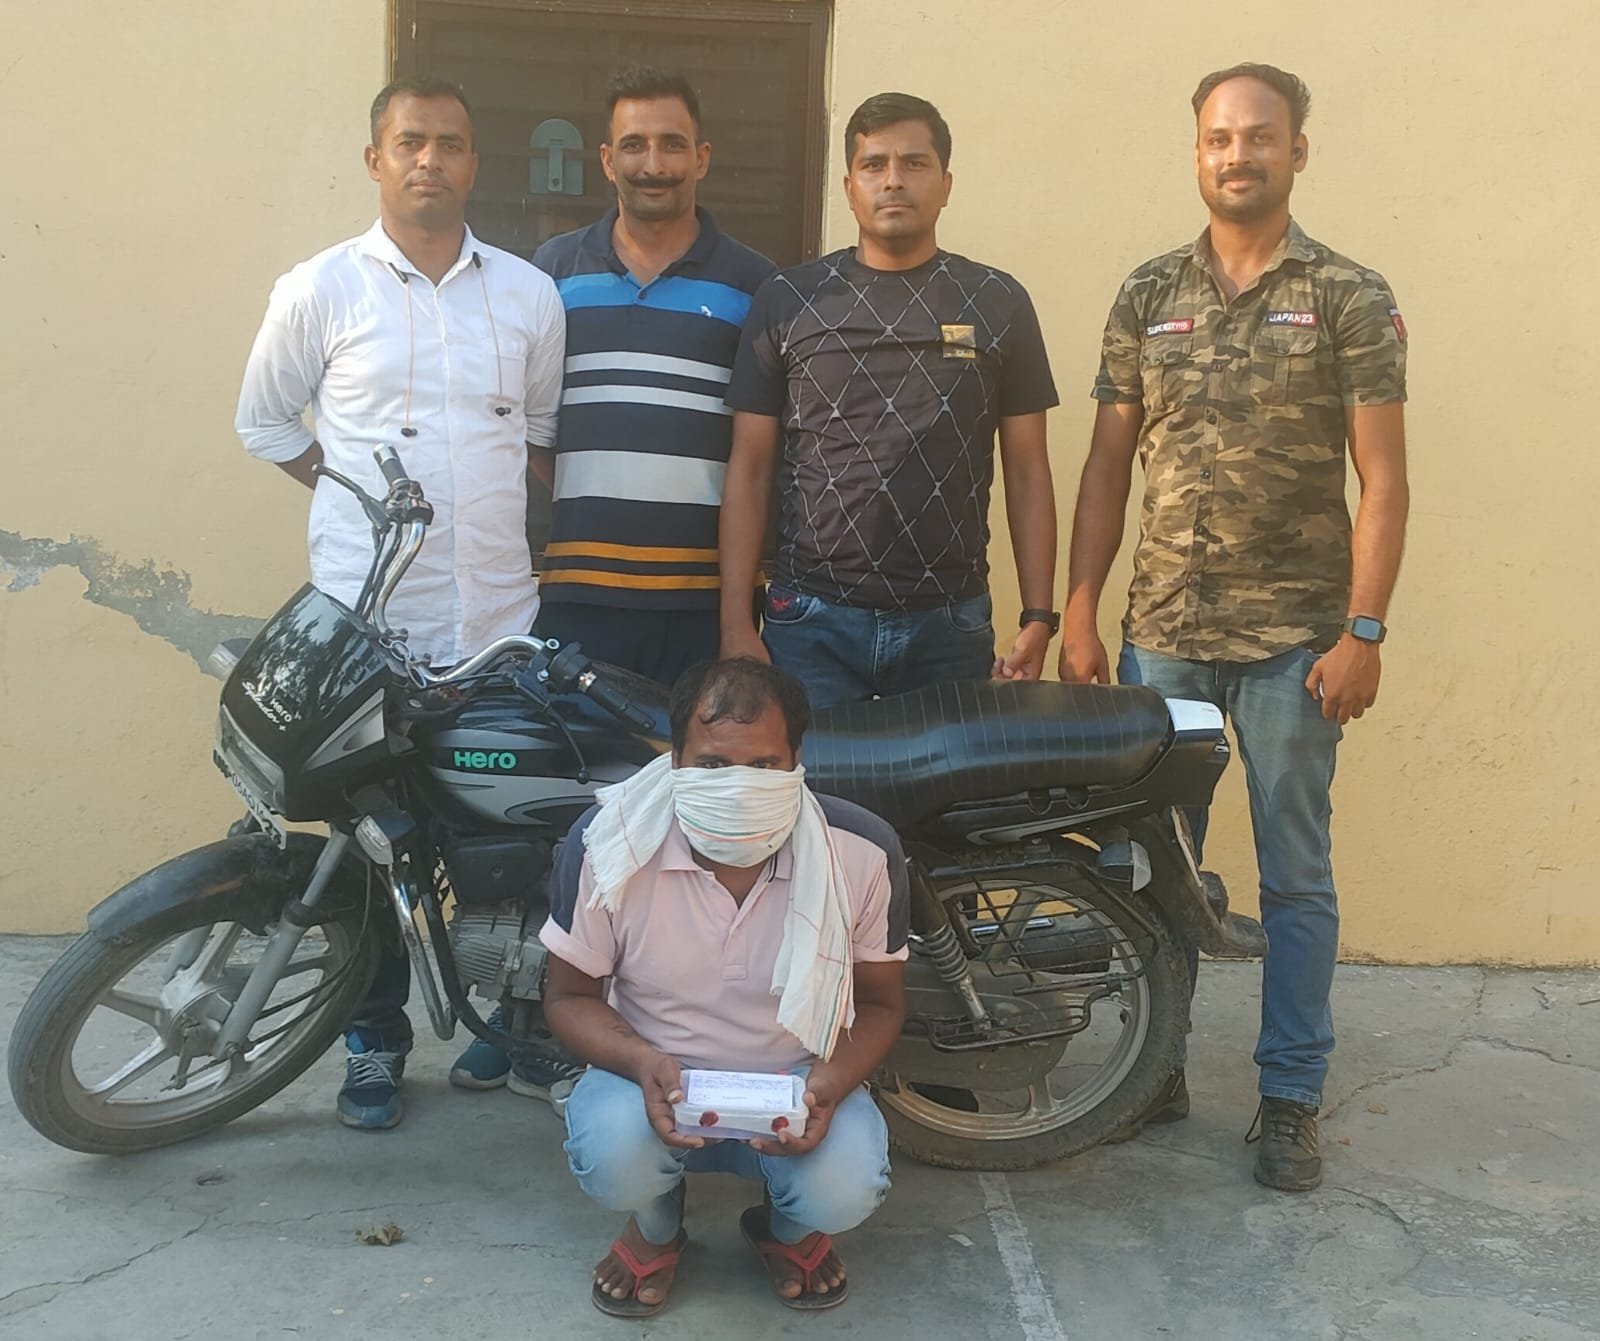 उधम सिंह नगर: 21 ग्राम अवैध स्मैक तथा बाइक के साथ एसओजी ने दबोचा एक तस्कर।।